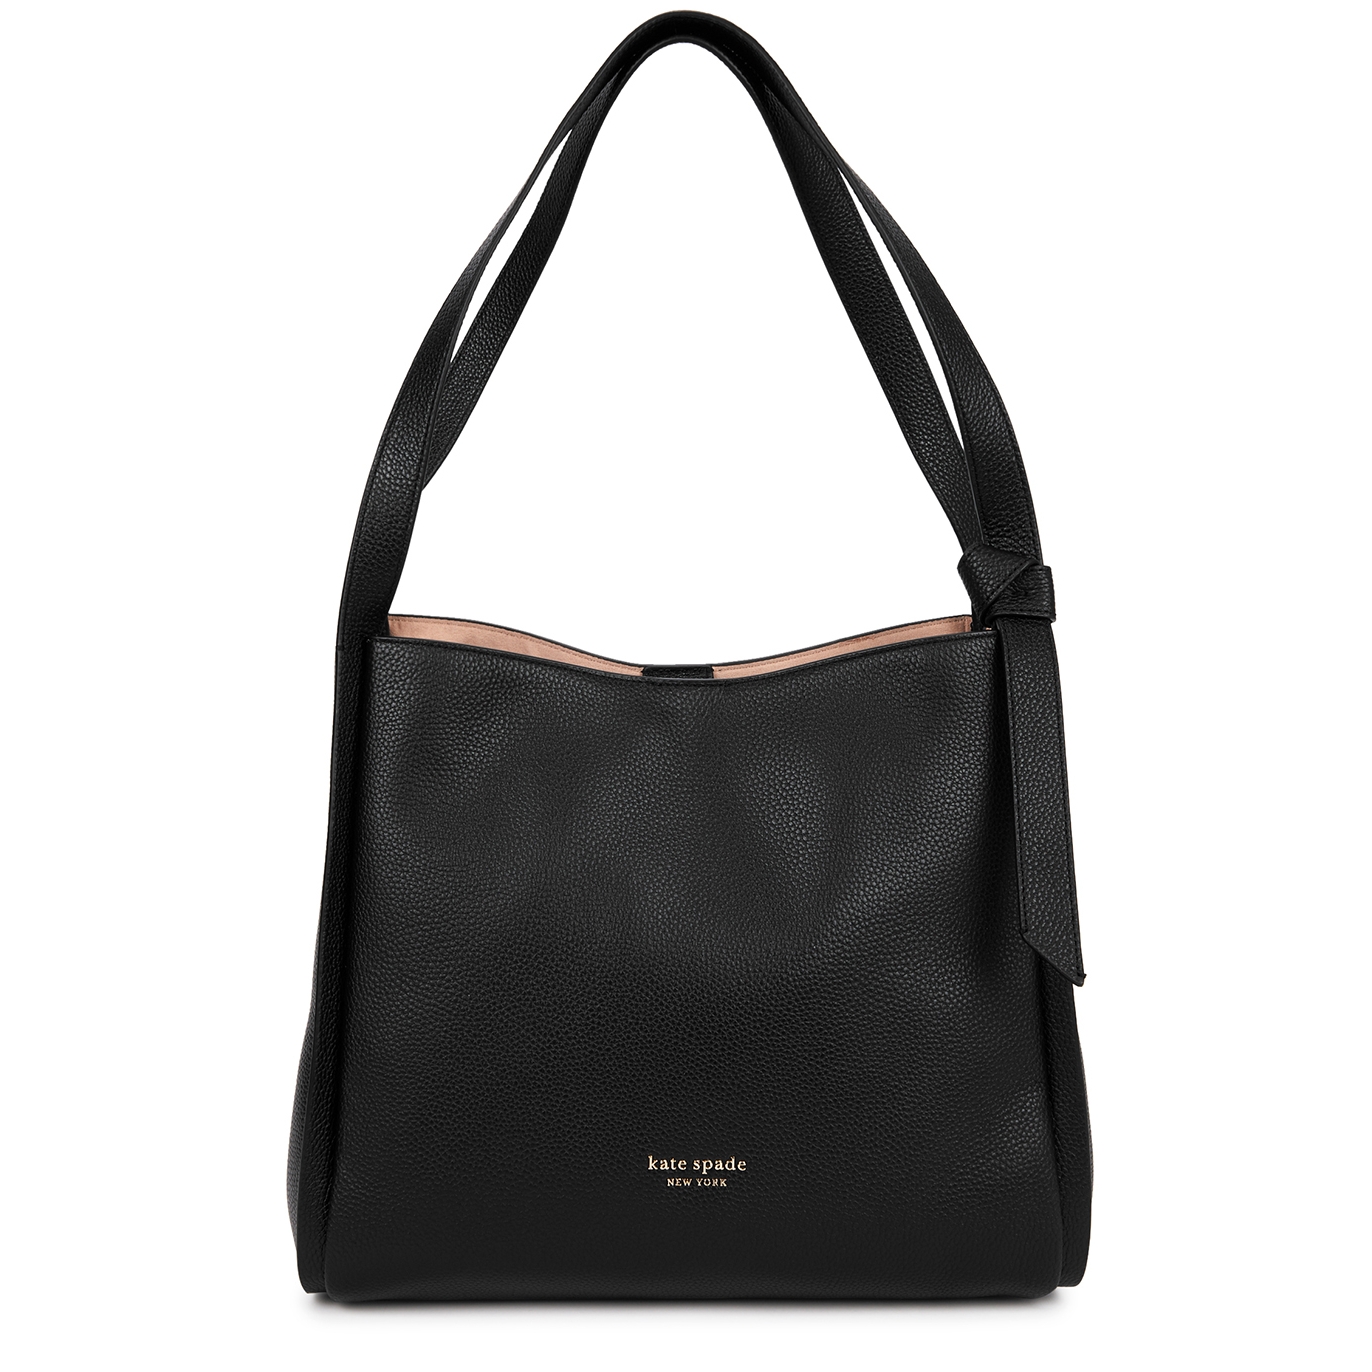 Kate Spade New York Knott large leather shoulder bag - Harvey Nichols